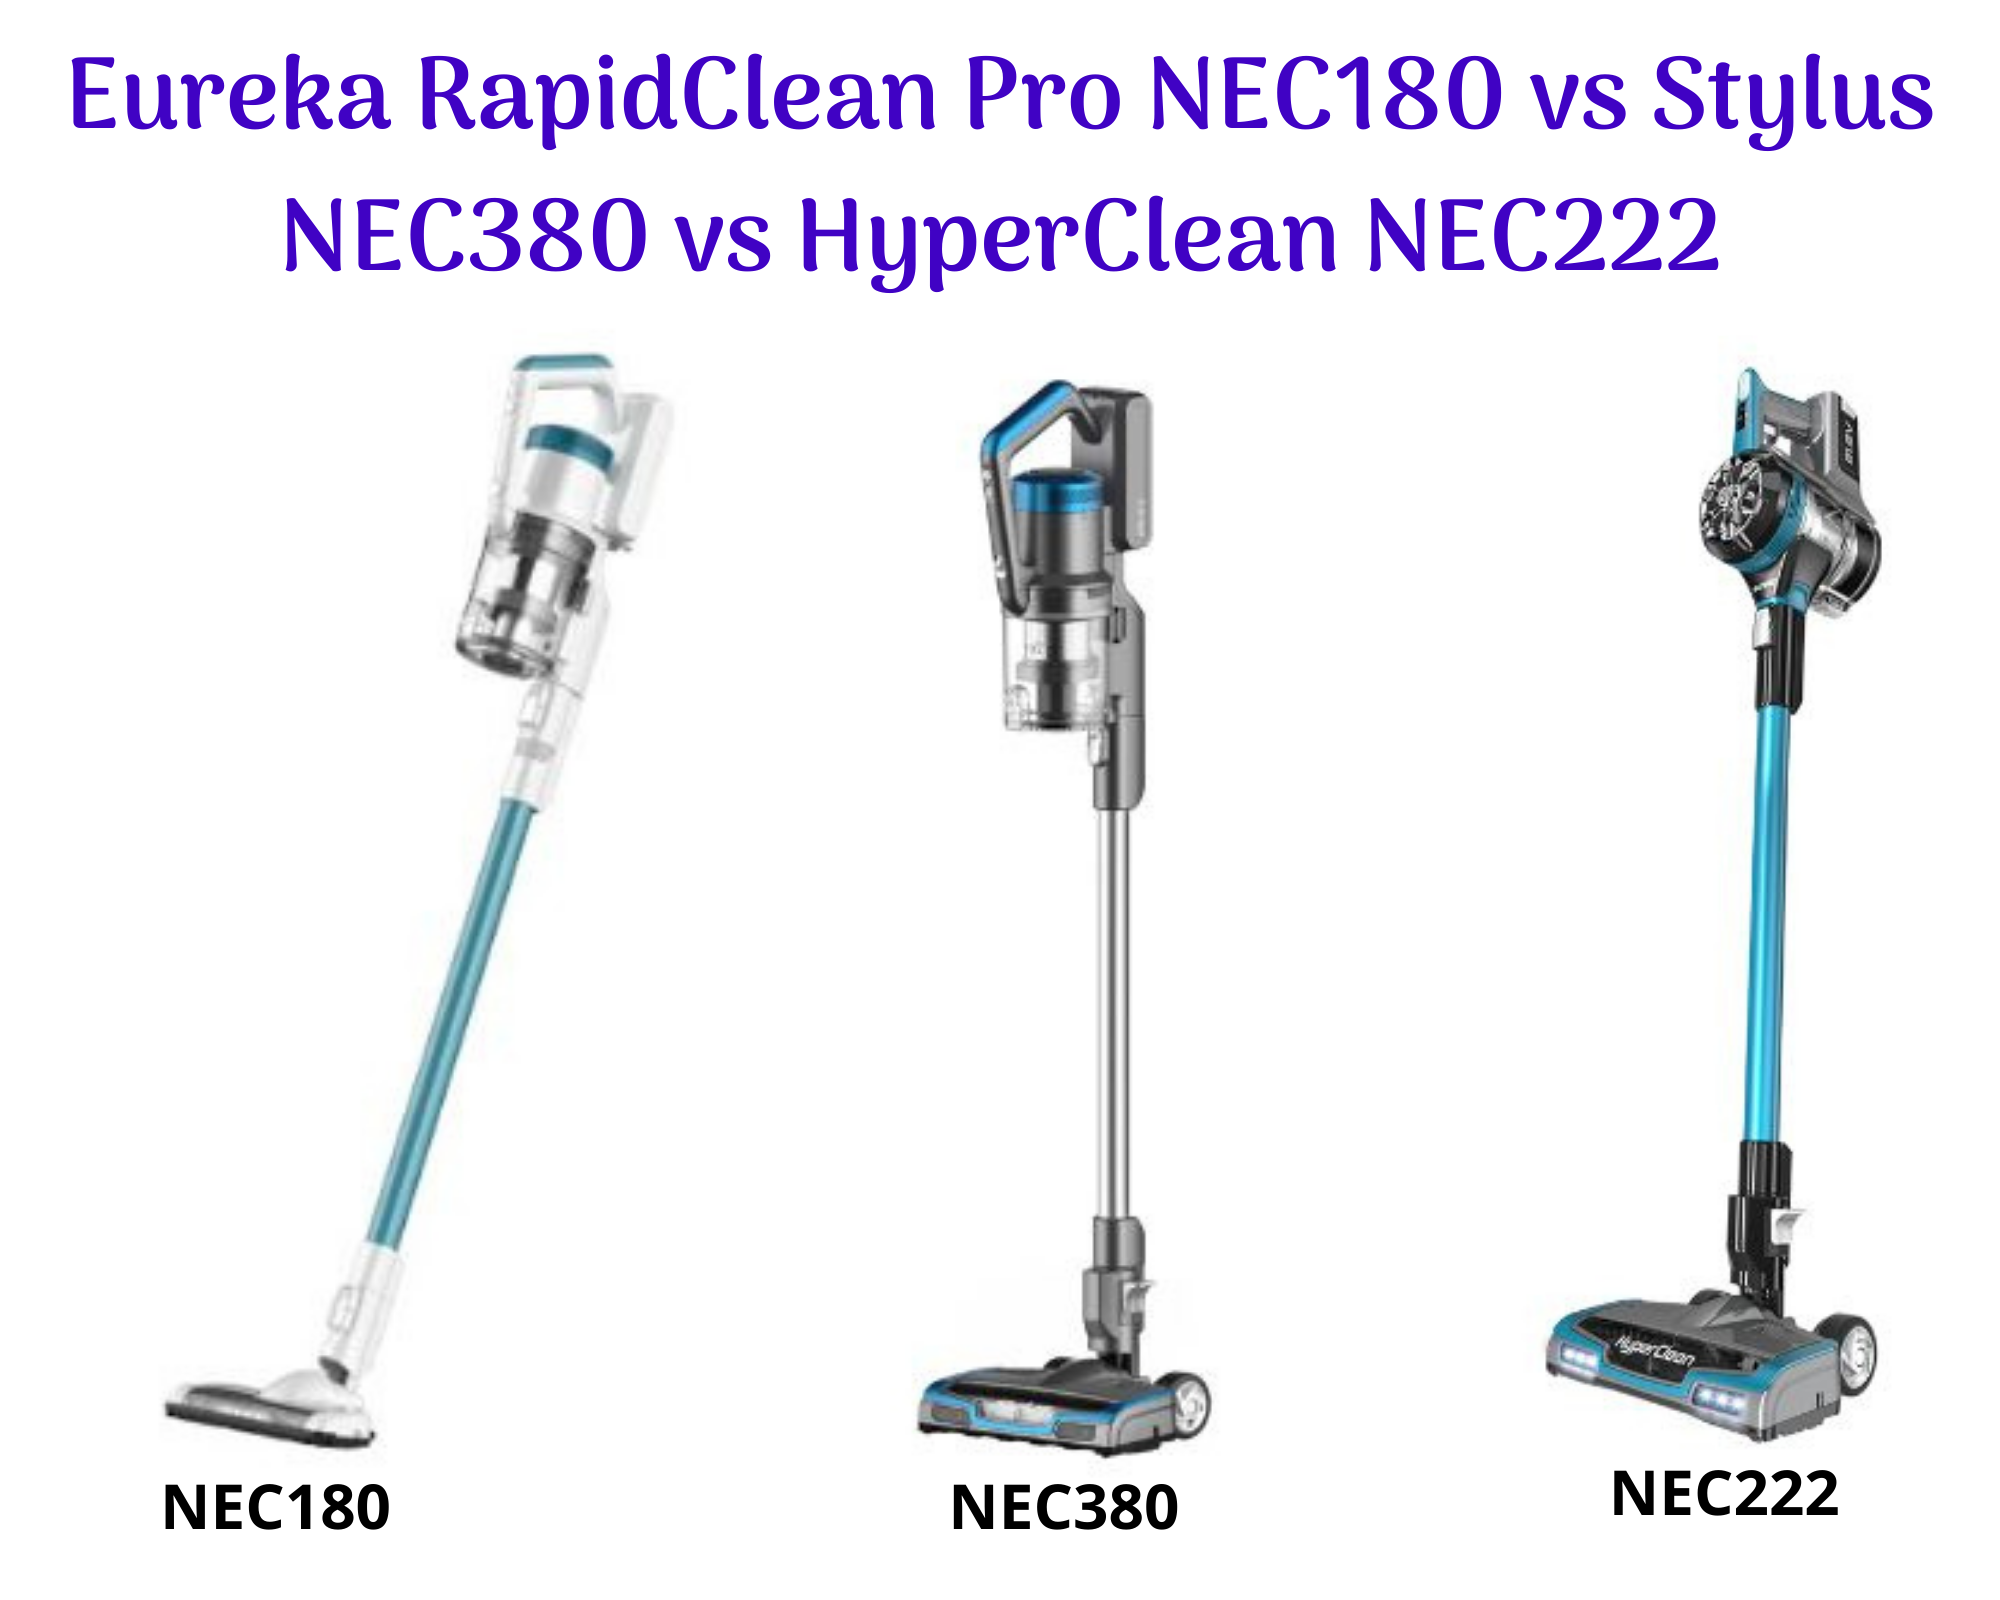 Eureka RapidClean Pro NEC180 vs Stylus NEC380 vs HyperClean NEC222